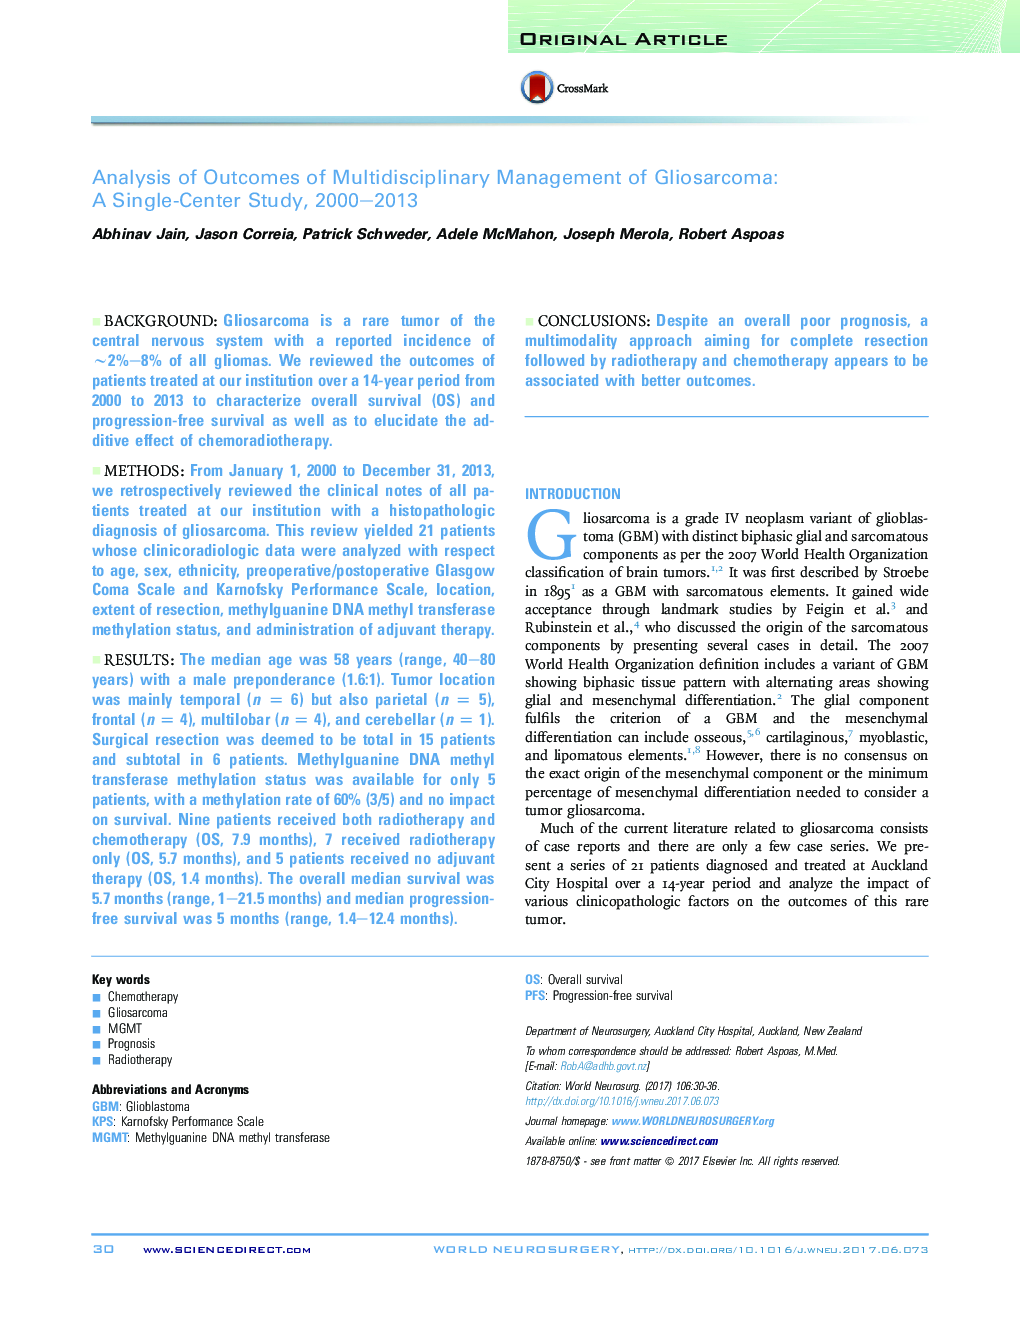 مقاله اصلی تجزیه و تحلیل نتایج مدیریت چند رشته ای گلیوسارکوم: مطالعات تک محور، 2000-2013 